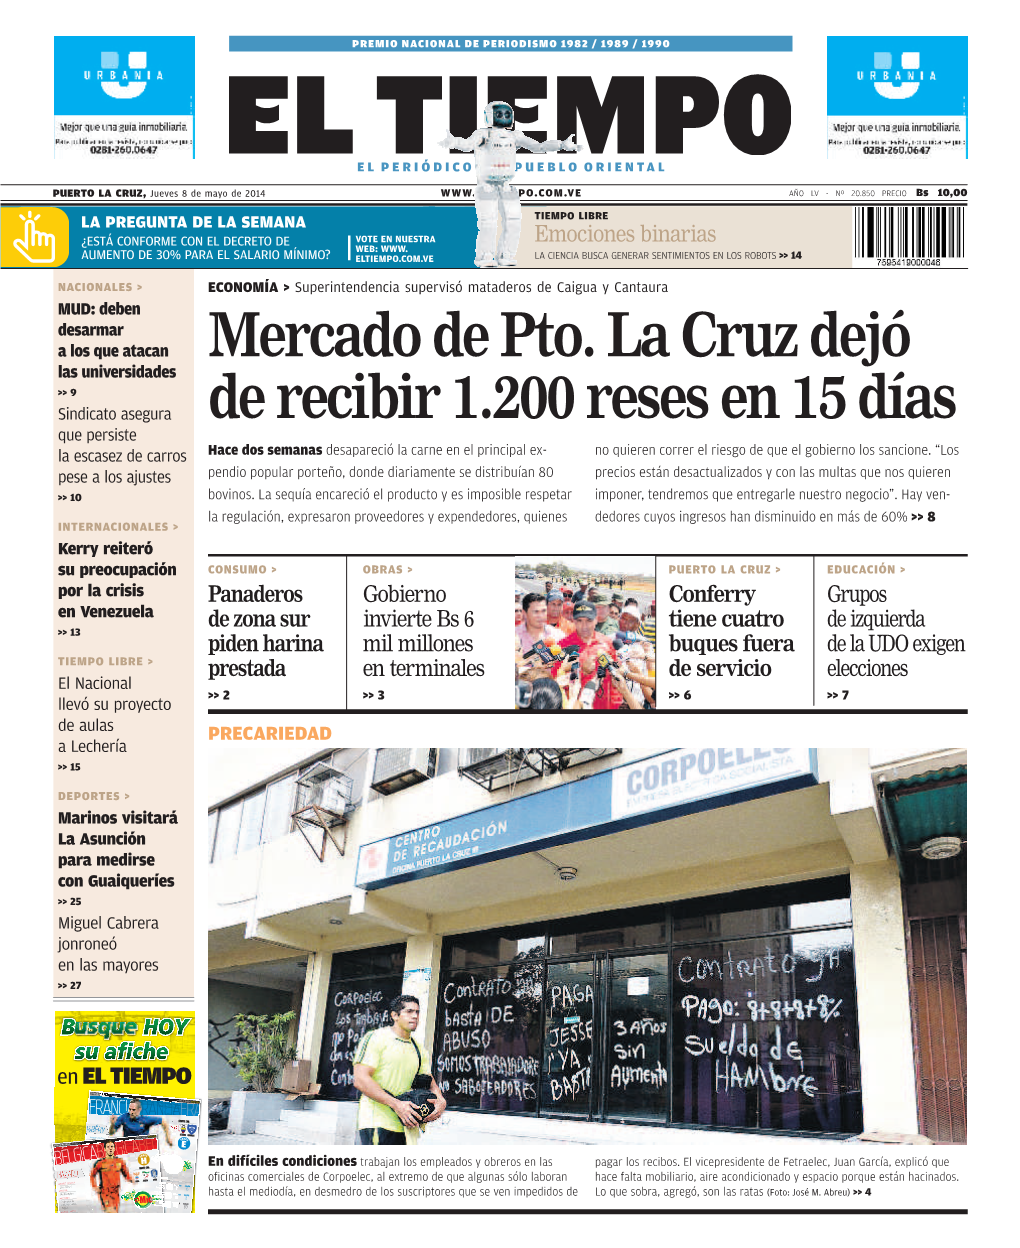 Mercado De Pto. La Cruz Dejó De Recibir 1.200 Reses En 15 Días